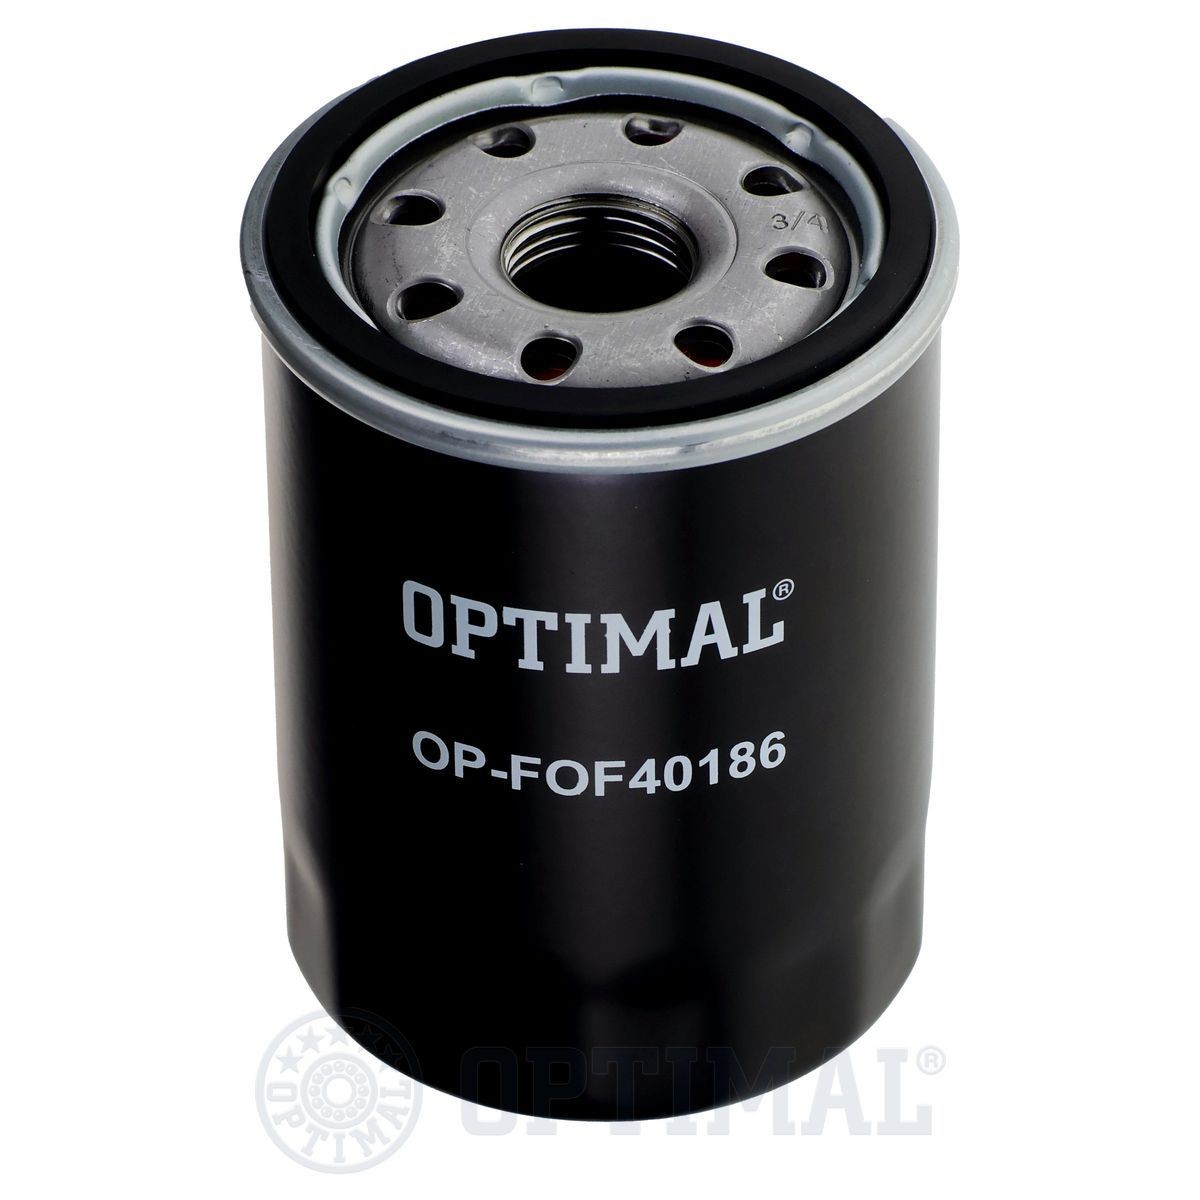 OPTIMAL OP-FOF40186 Oil filter 90915-YZZE2